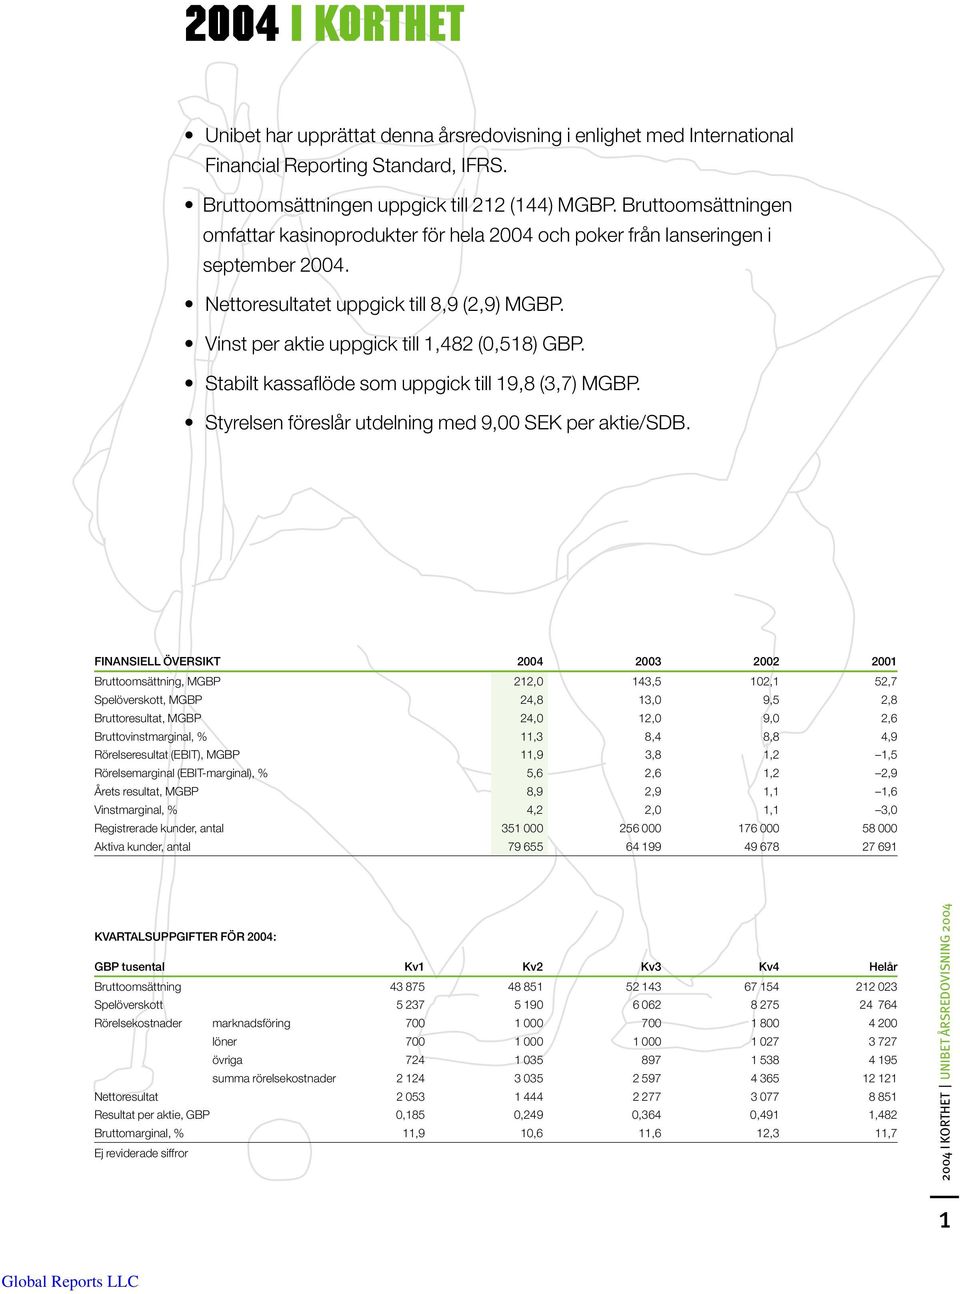 Stabilt kassaflöde som uppgick till 19,8 (3,7) MGBP. Styrelsen föreslår utdelning med 9,00 SEK per aktie/sdb.